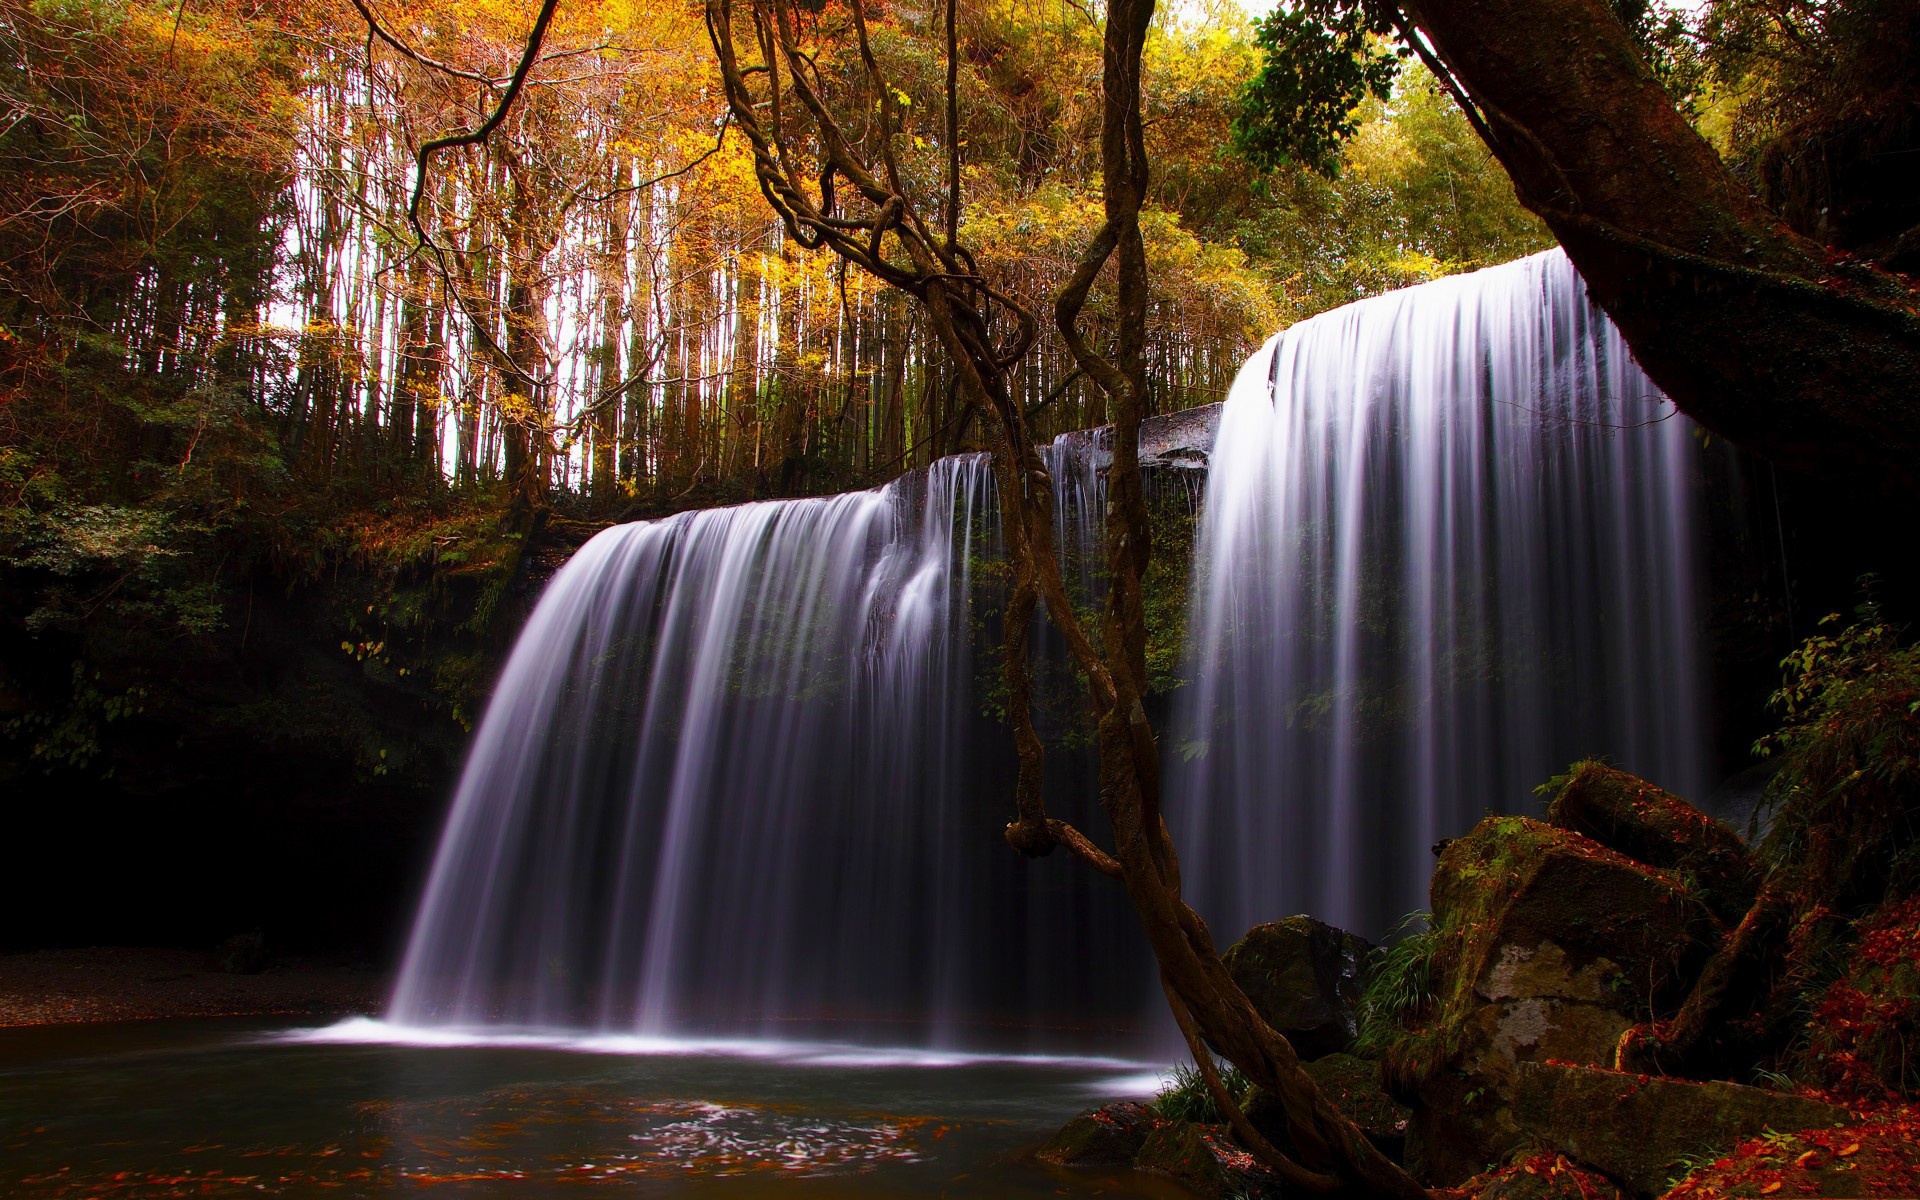 Waterfall in Autumn